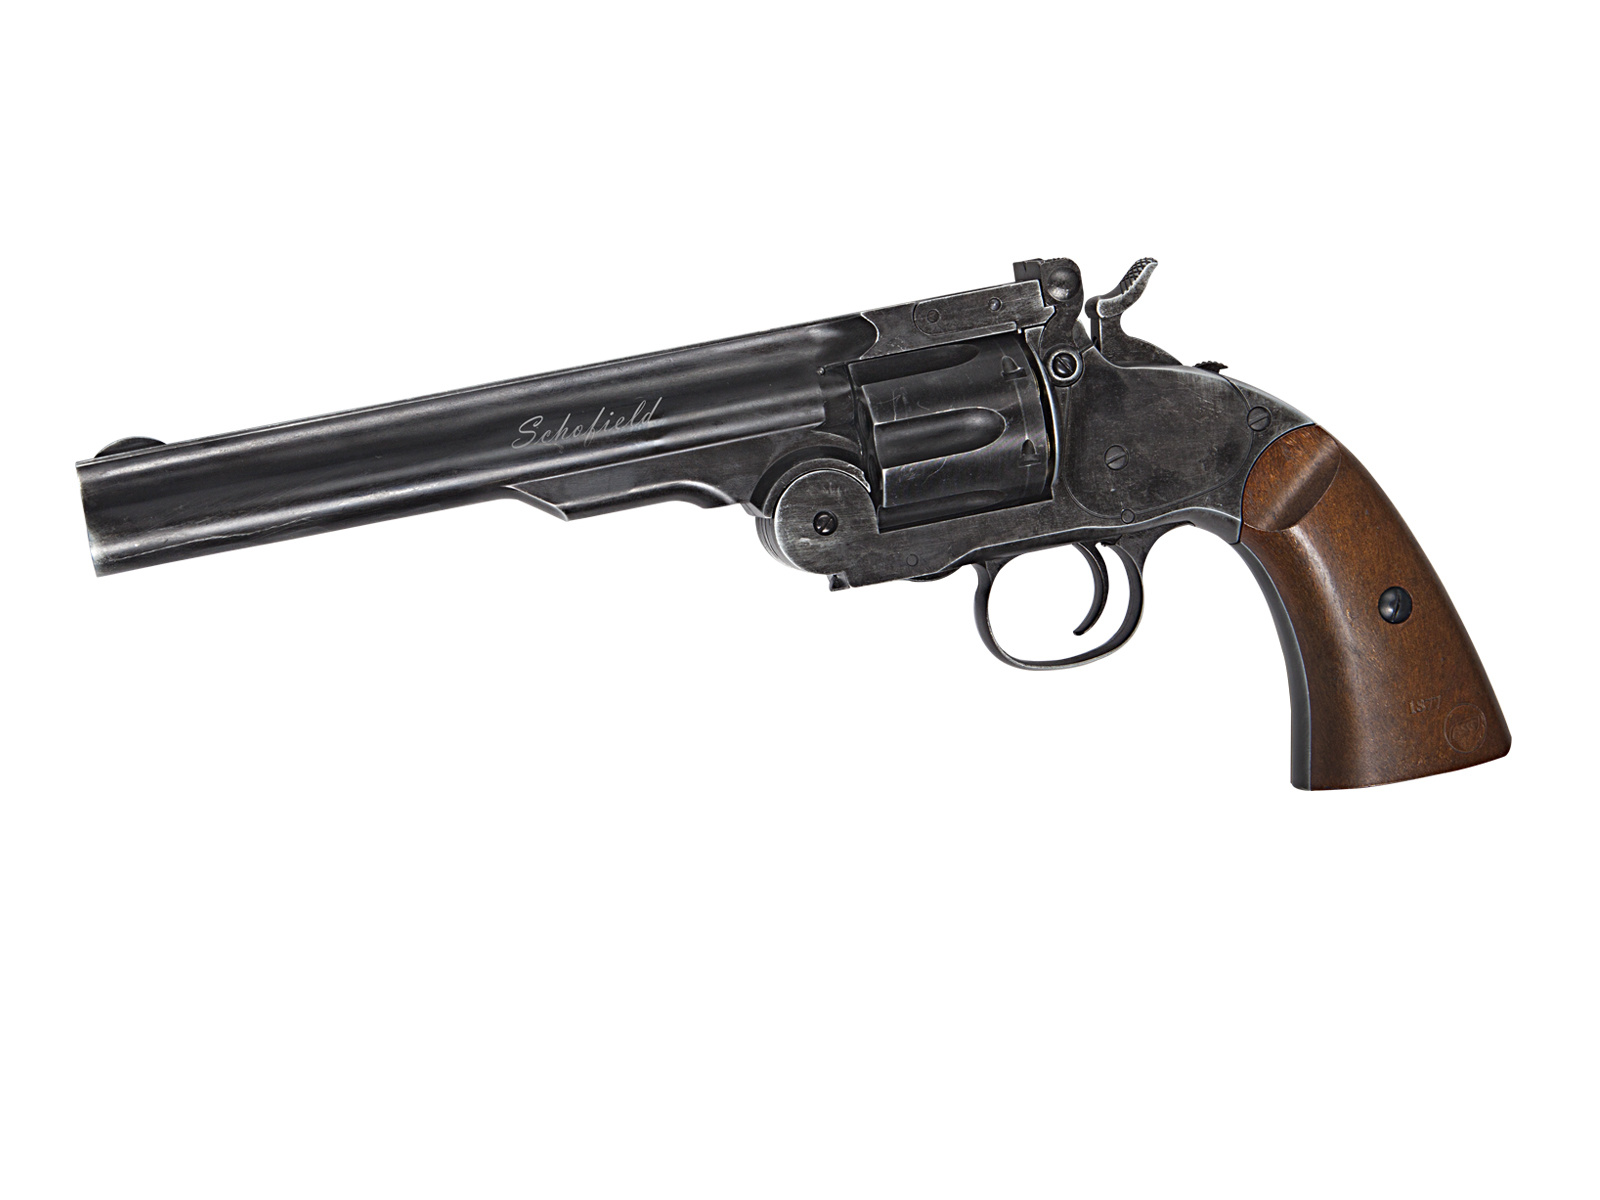 ASG Revolver Schofield Co2 da 6 pollici NBB 2.0 Joule - BK/aspetto legno